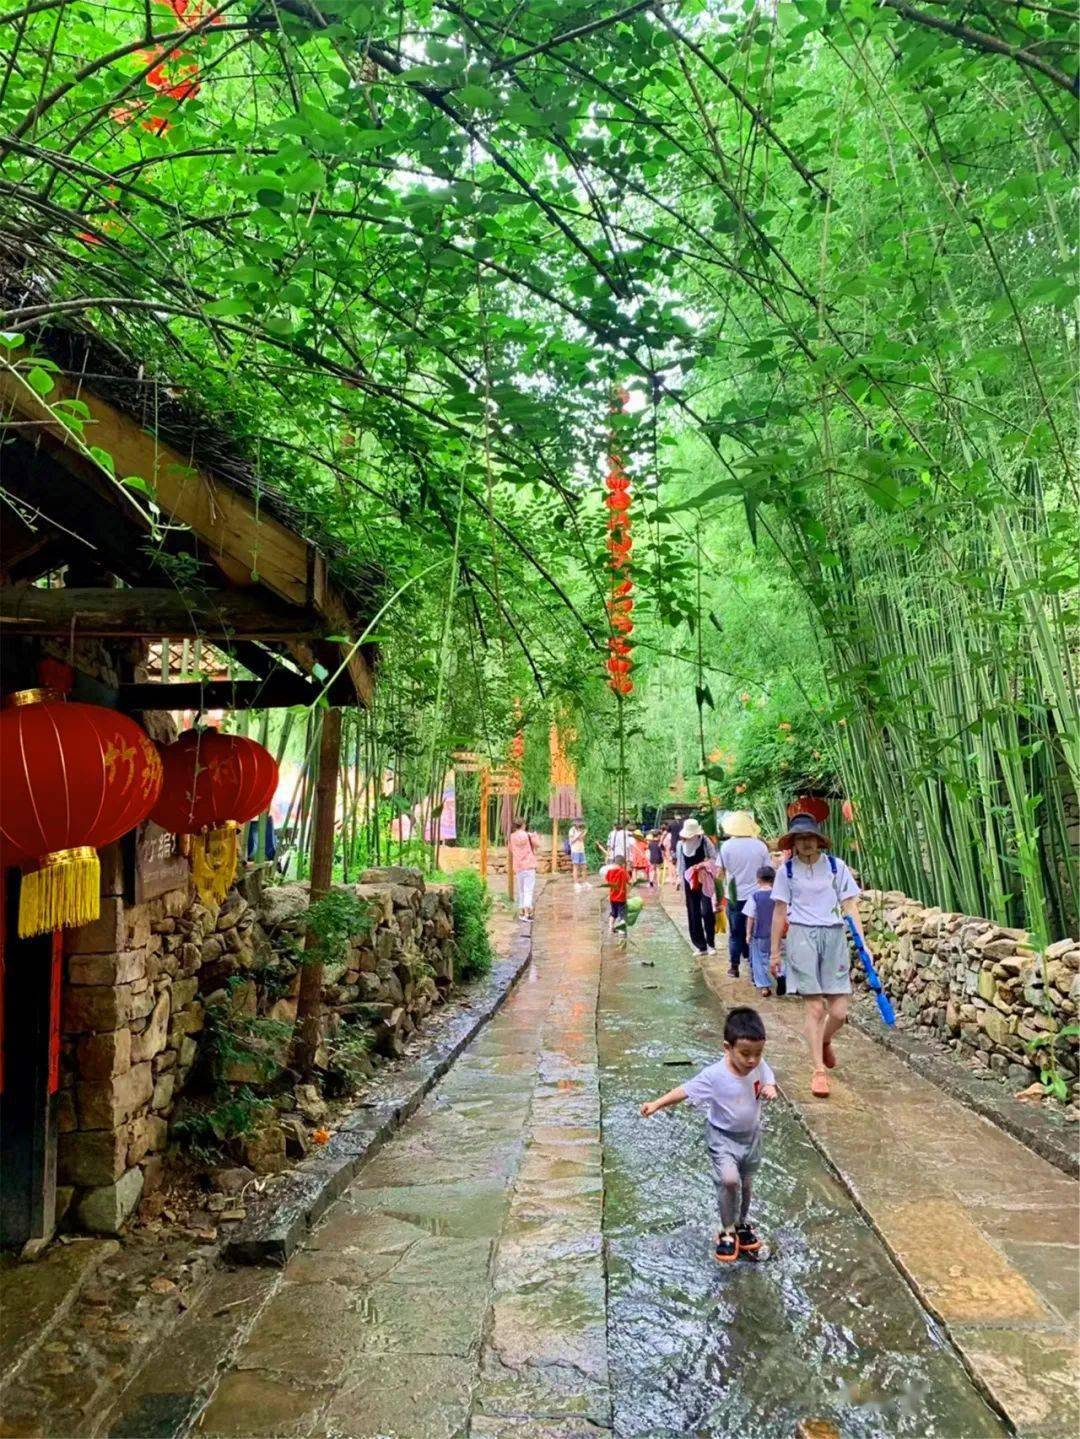 龙腾竹泉旅游集团公司将不断加大投入,完善提升竹泉村 ·红石寨景区的